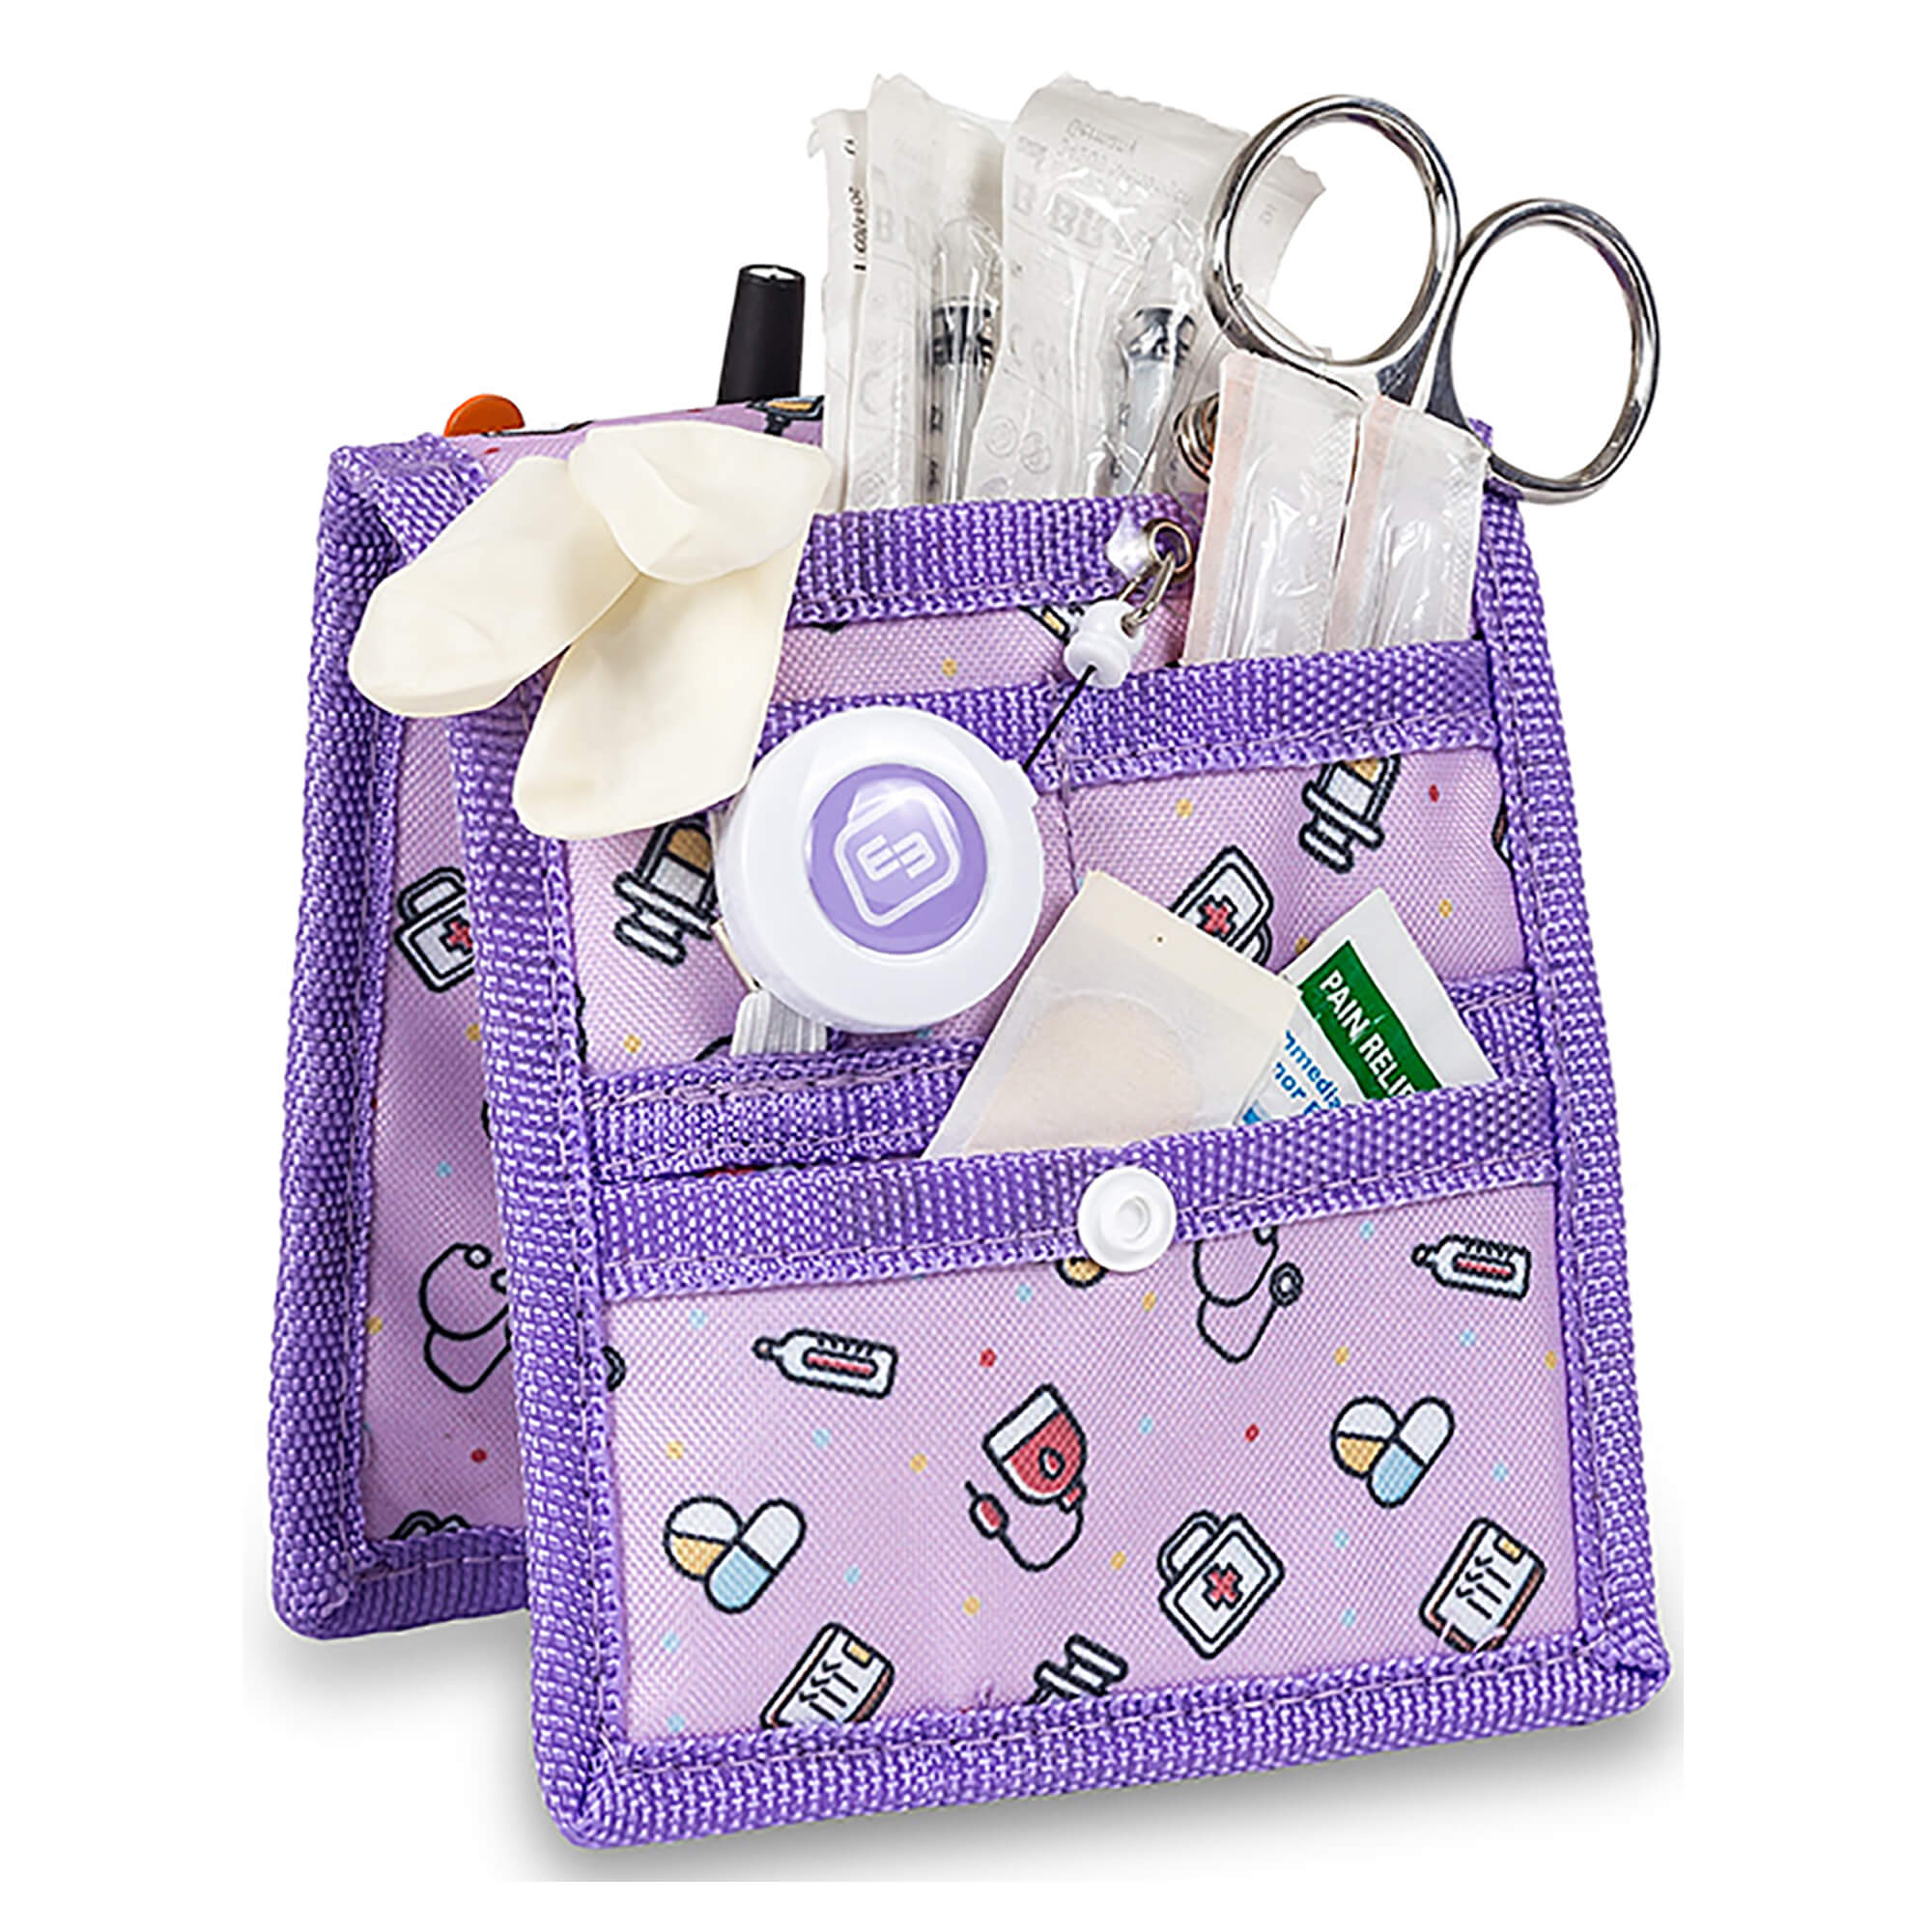 Elite Bags Taschenorganizer für Praxis, Klinik oder Pflege. Erhältlich in vielen Farben. Organizer für die persönliche Ausrüstung.